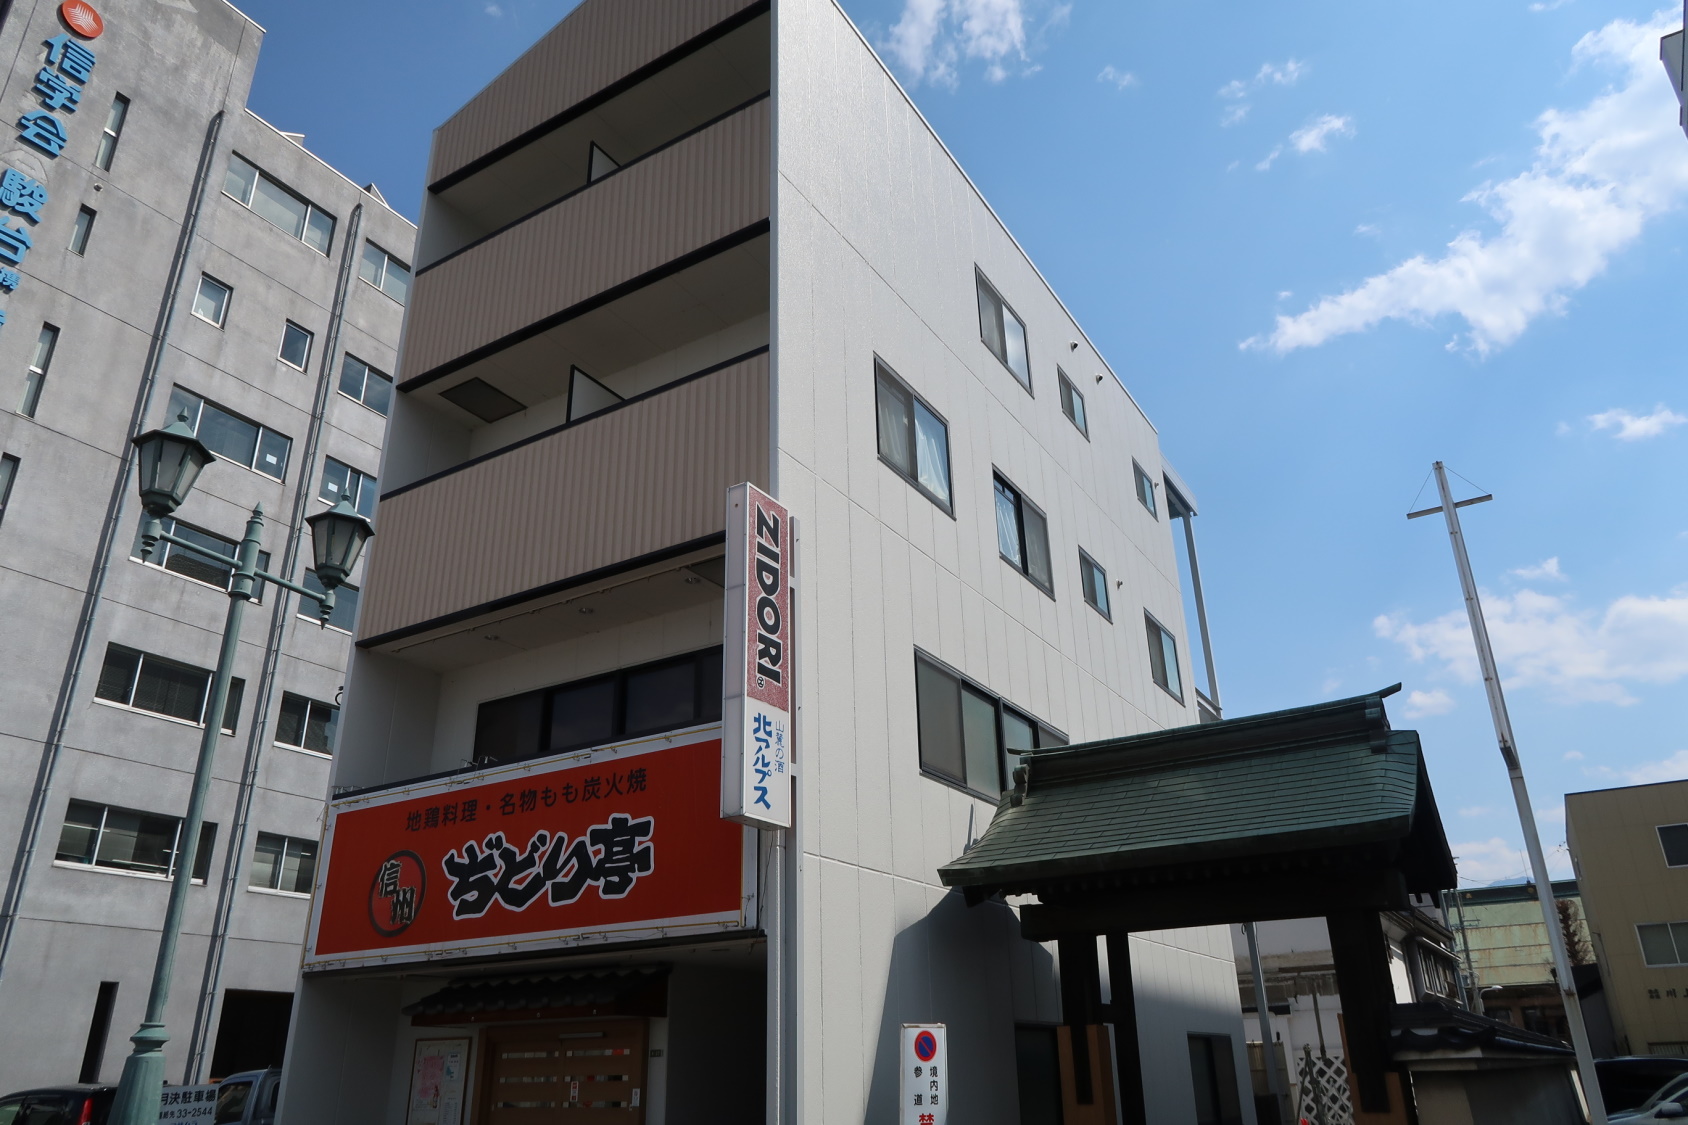 SA Inn Matsumotoeki-Higashi